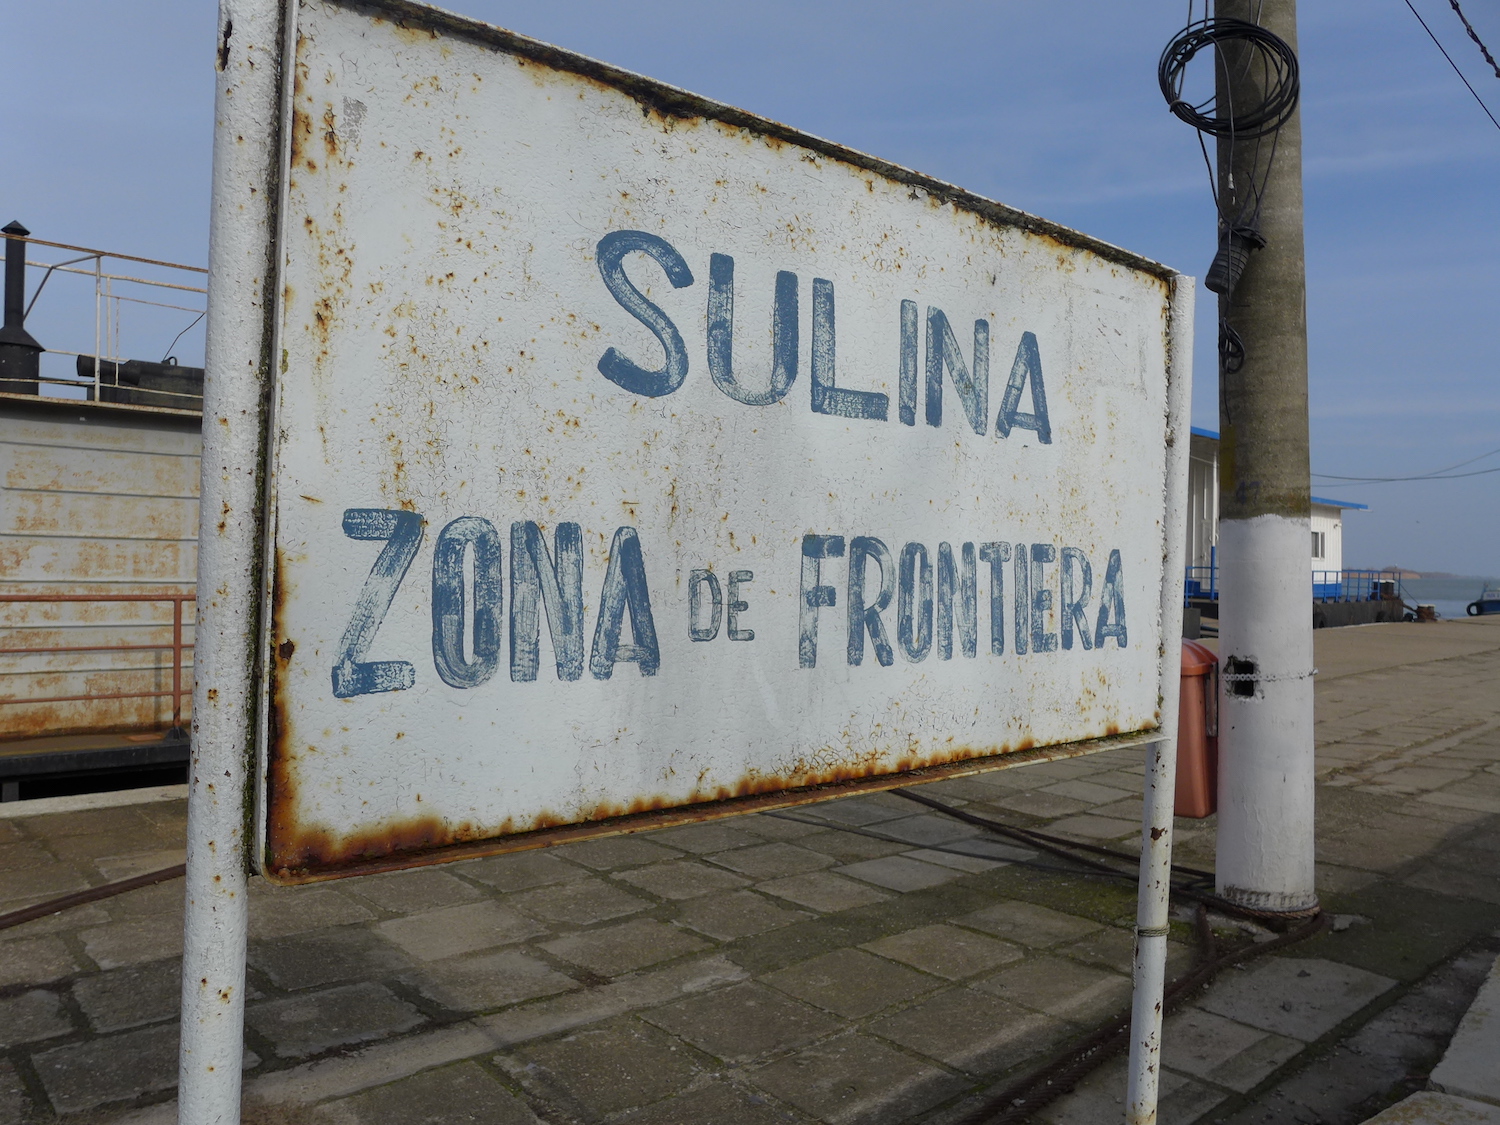 Sulina est située tout près de la frontière ukrainienne. Plusieurs bateaux de la police des frontières stationnent dans le port.